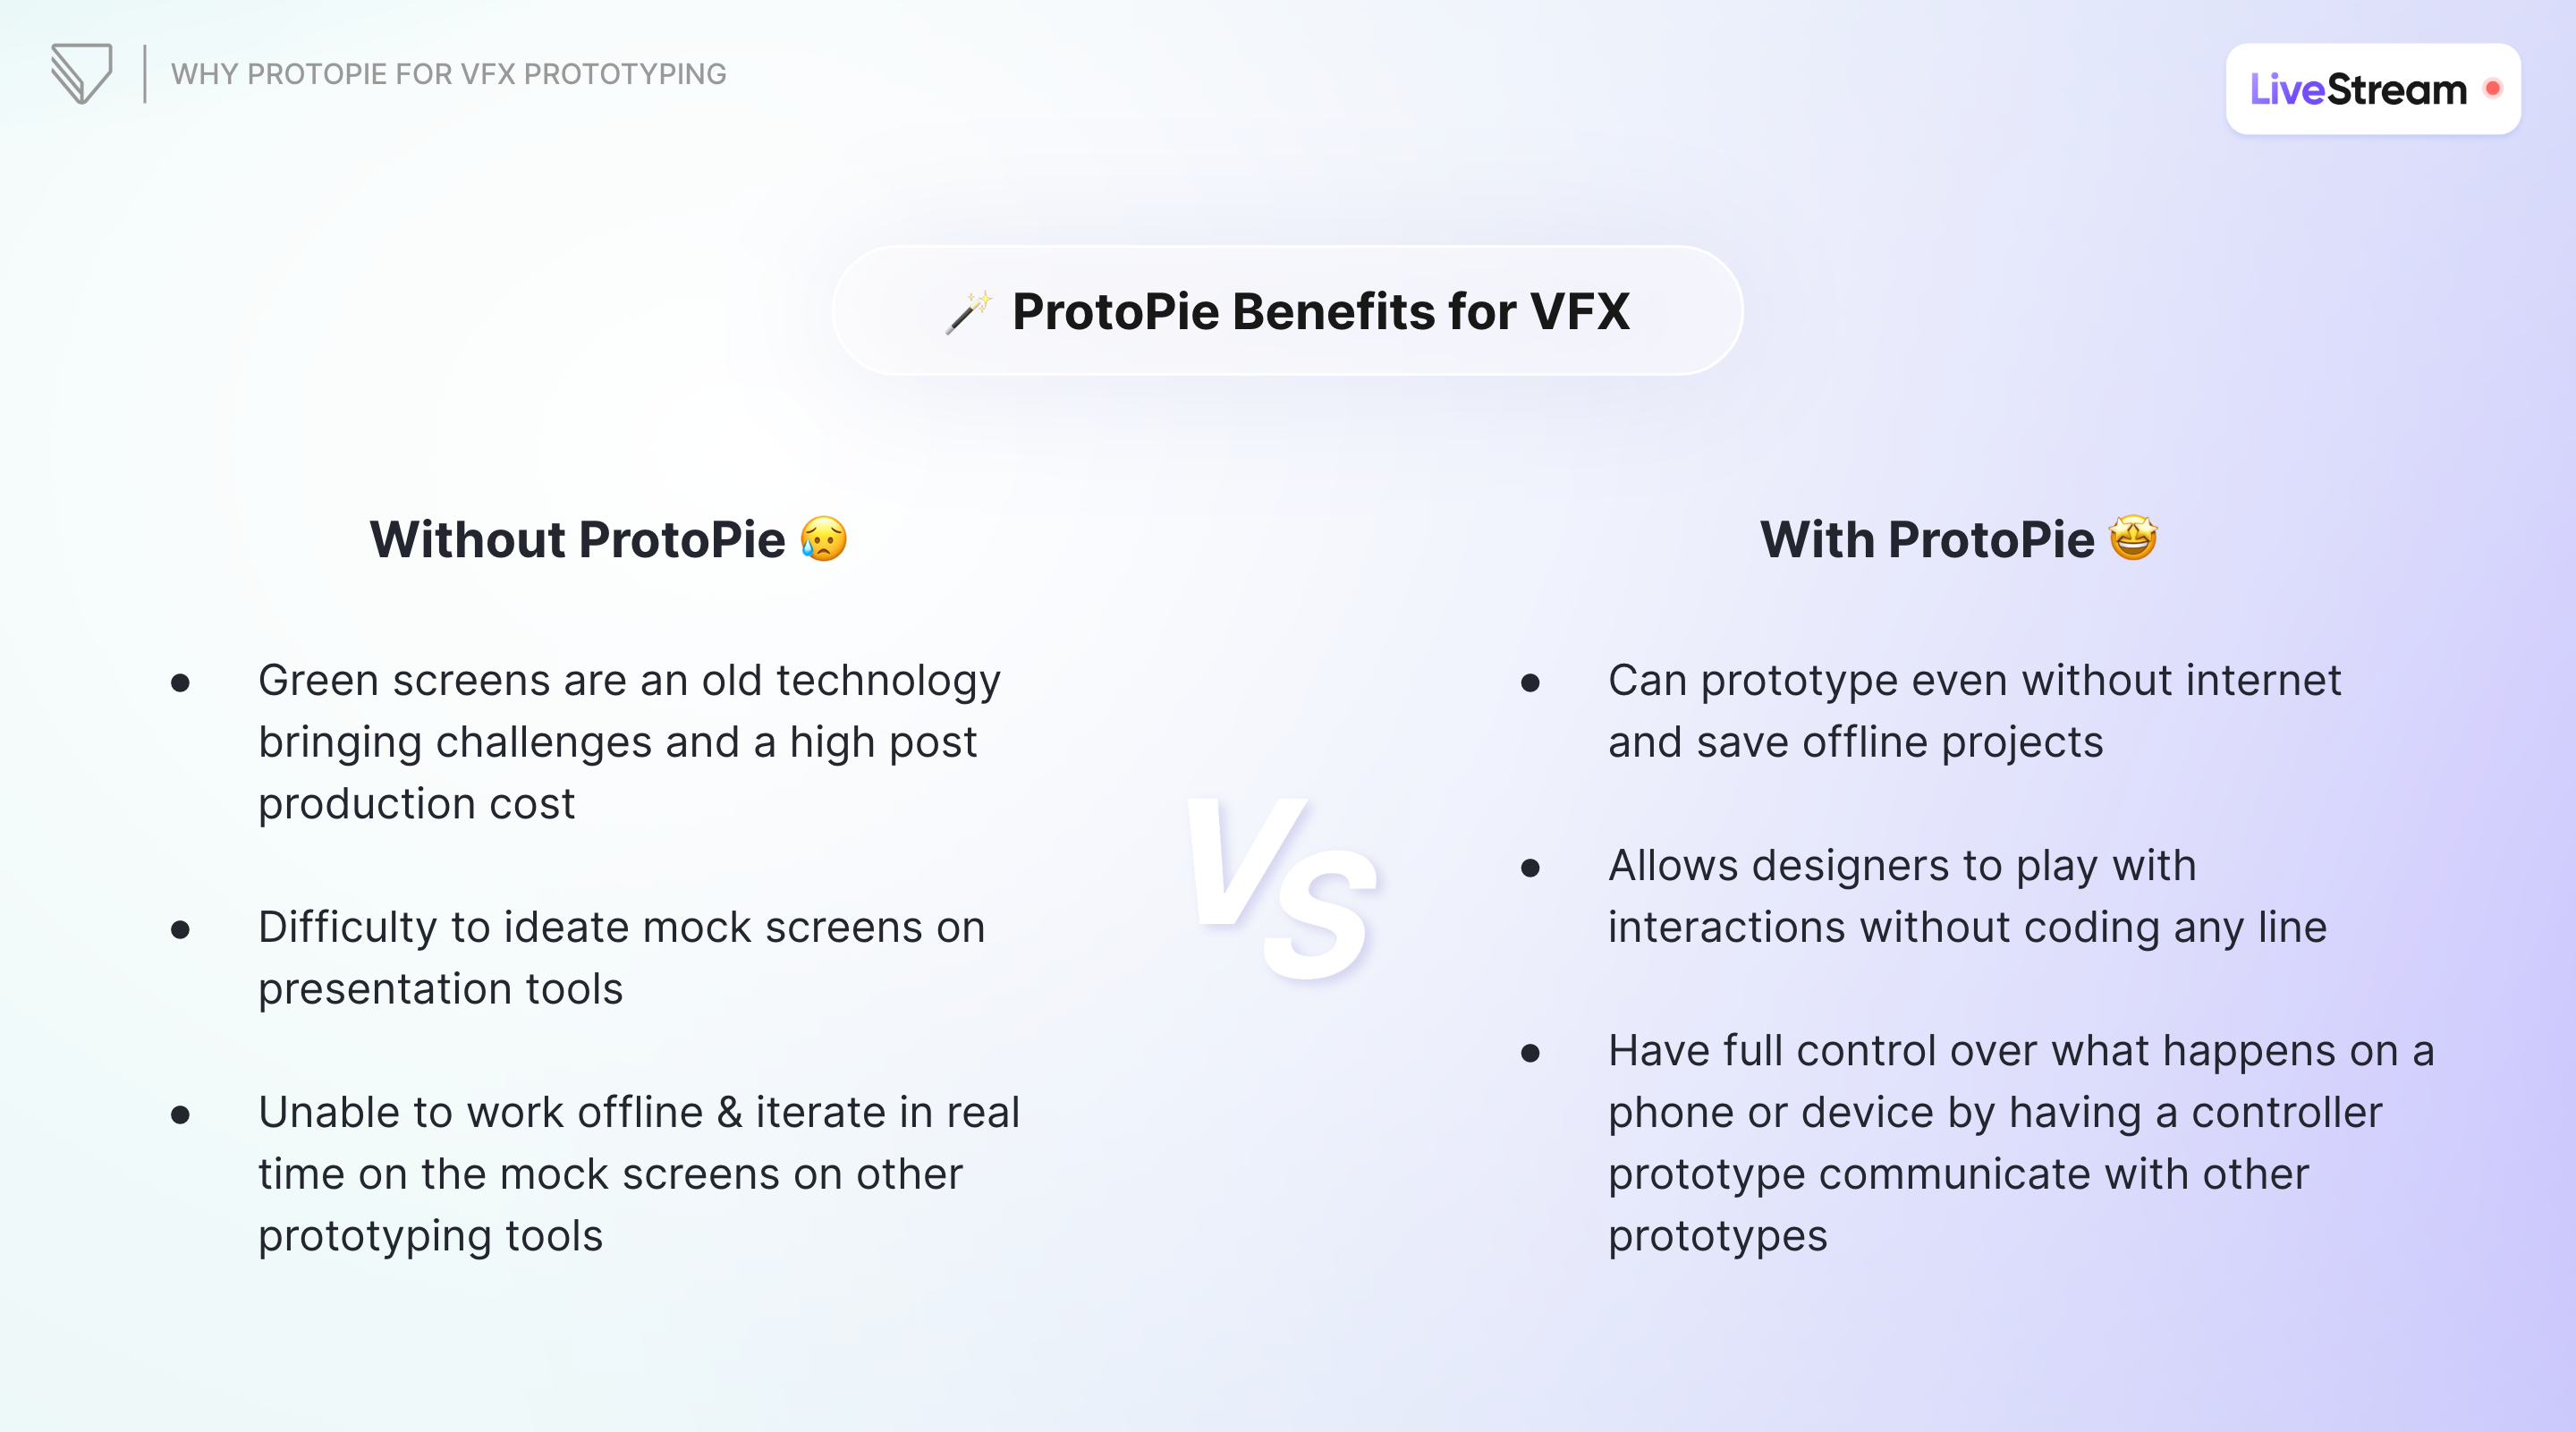 ProtoPie benefits for VFX prototyping.